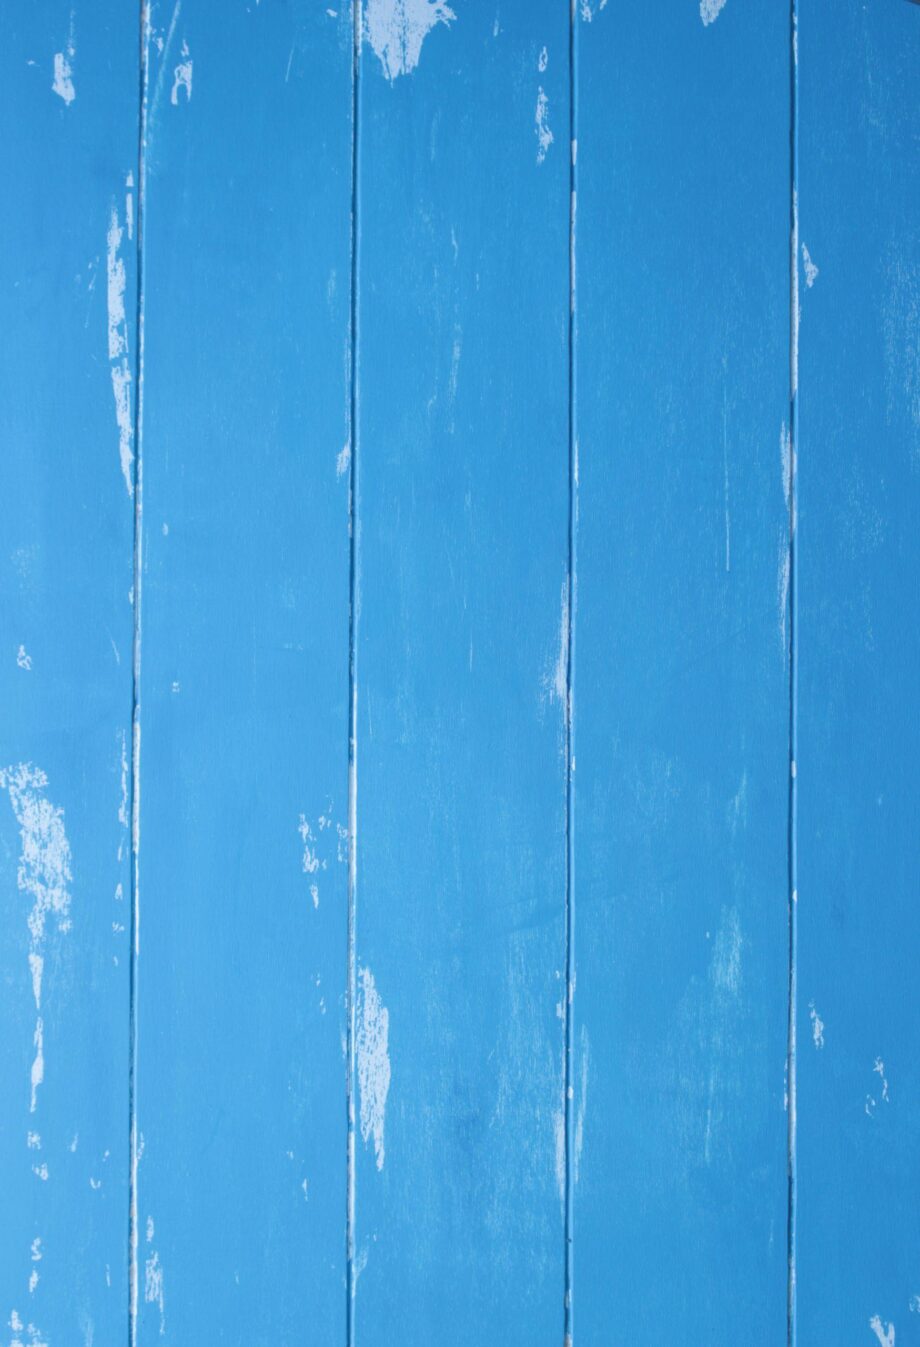 Blue wood background